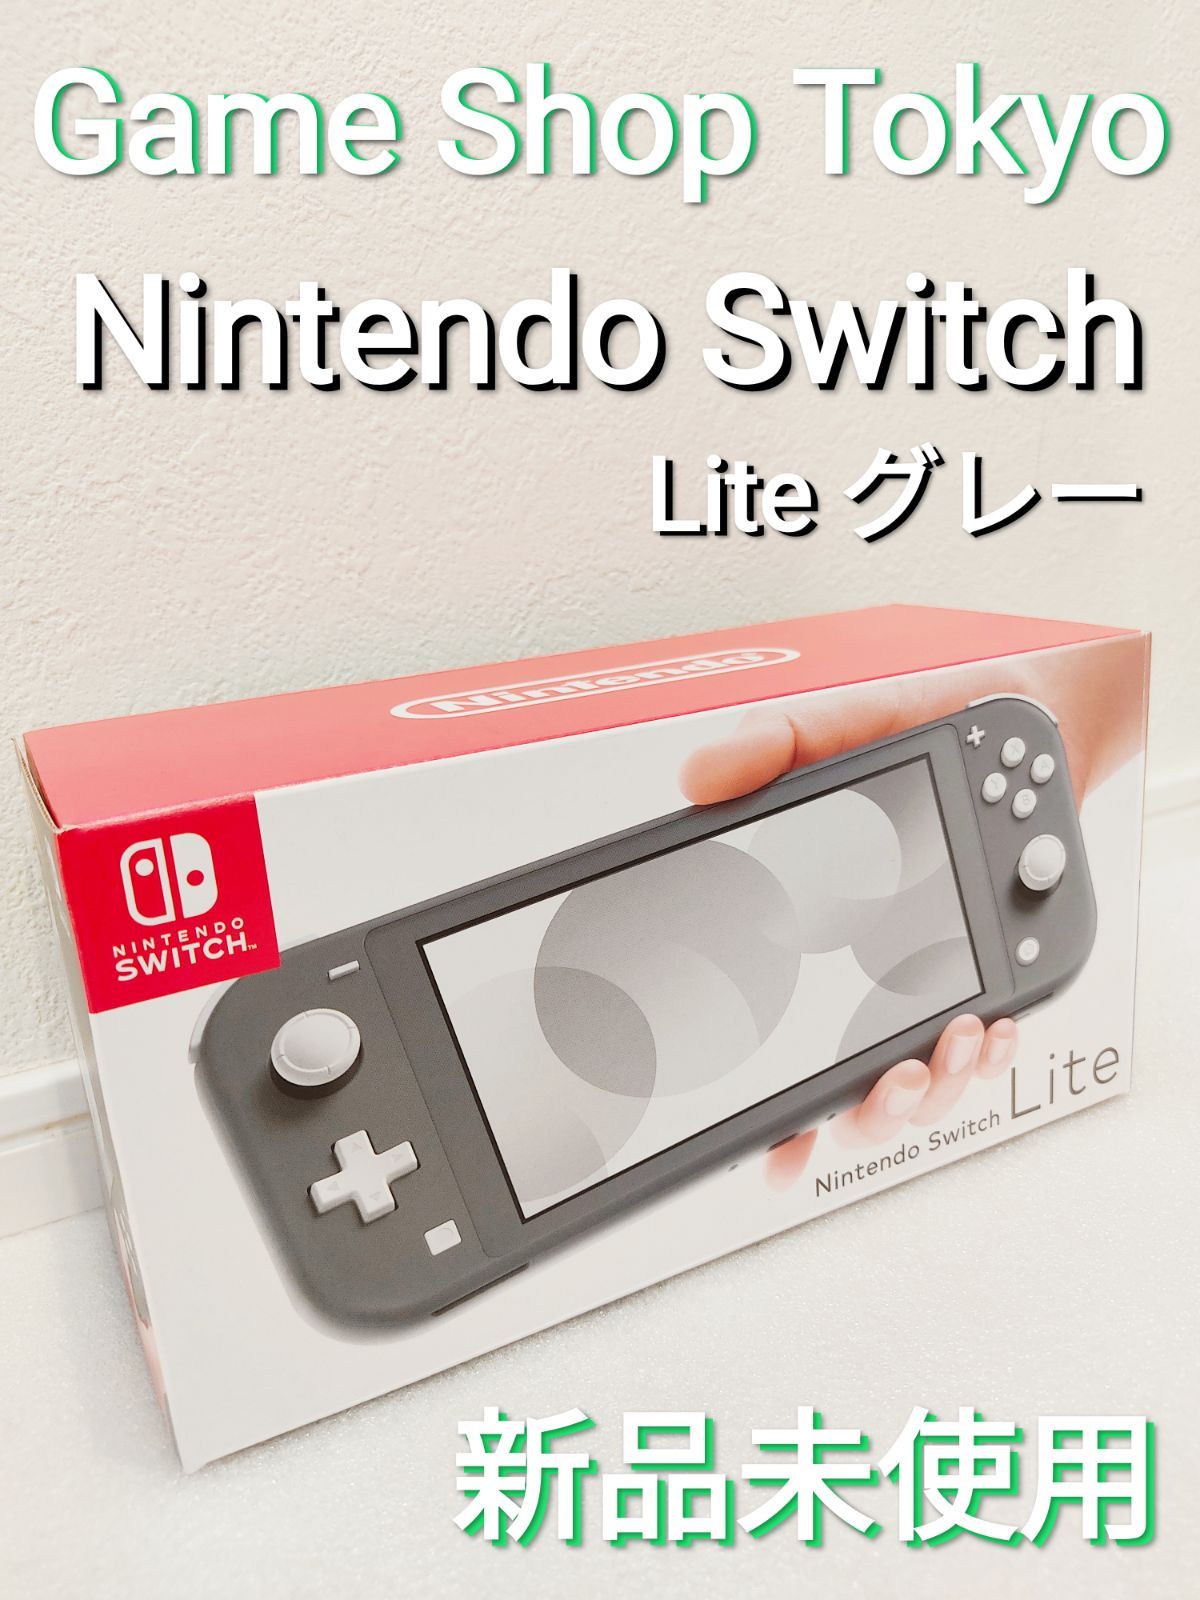 新品未使用品 Nintendo Switch lite グレー